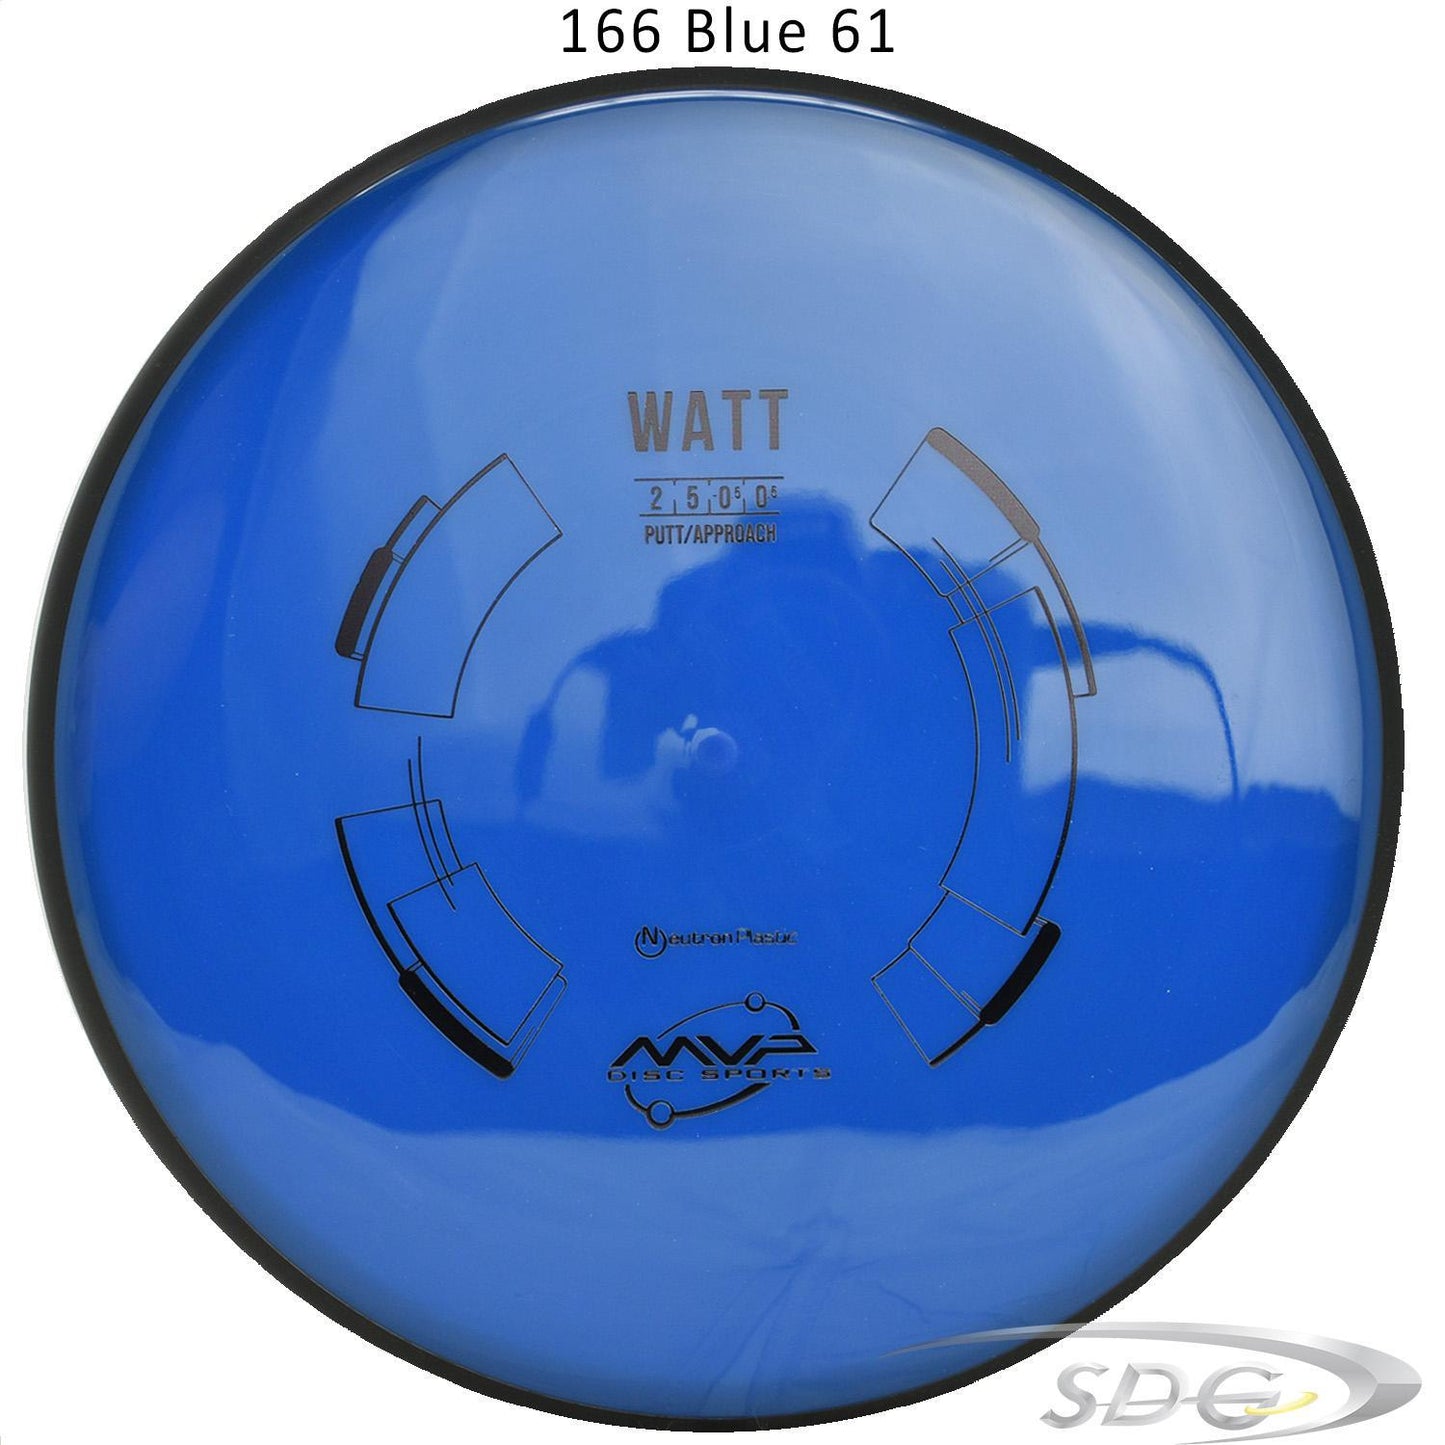 mvp-neutron-watt-disc-golf-putt-approach-169-165-weights 166 Blue 61 